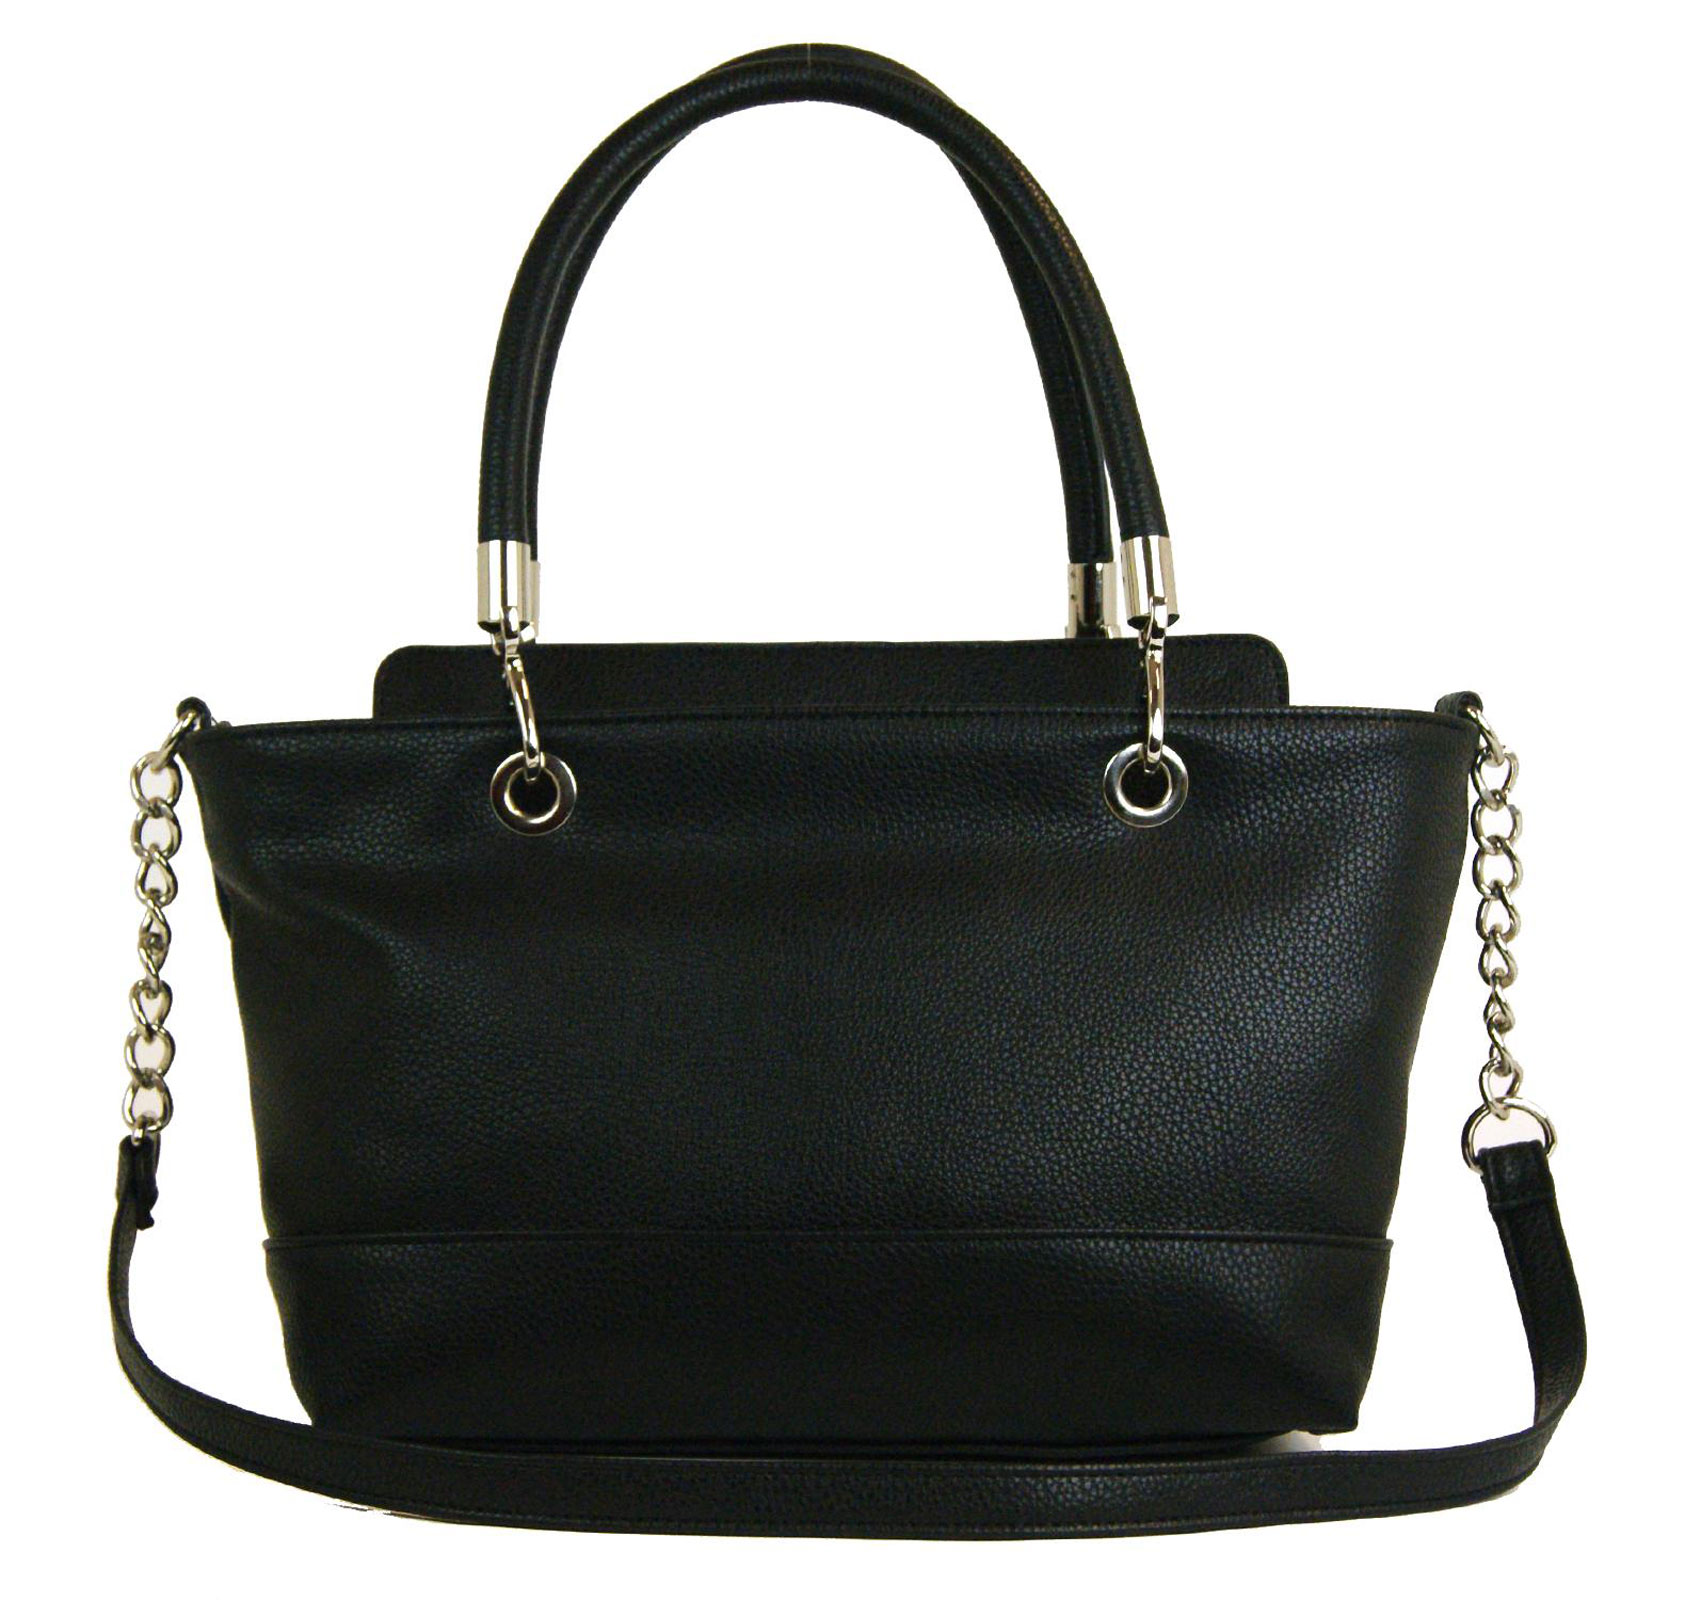 Mondani Women's Baxter Shopper Handbag